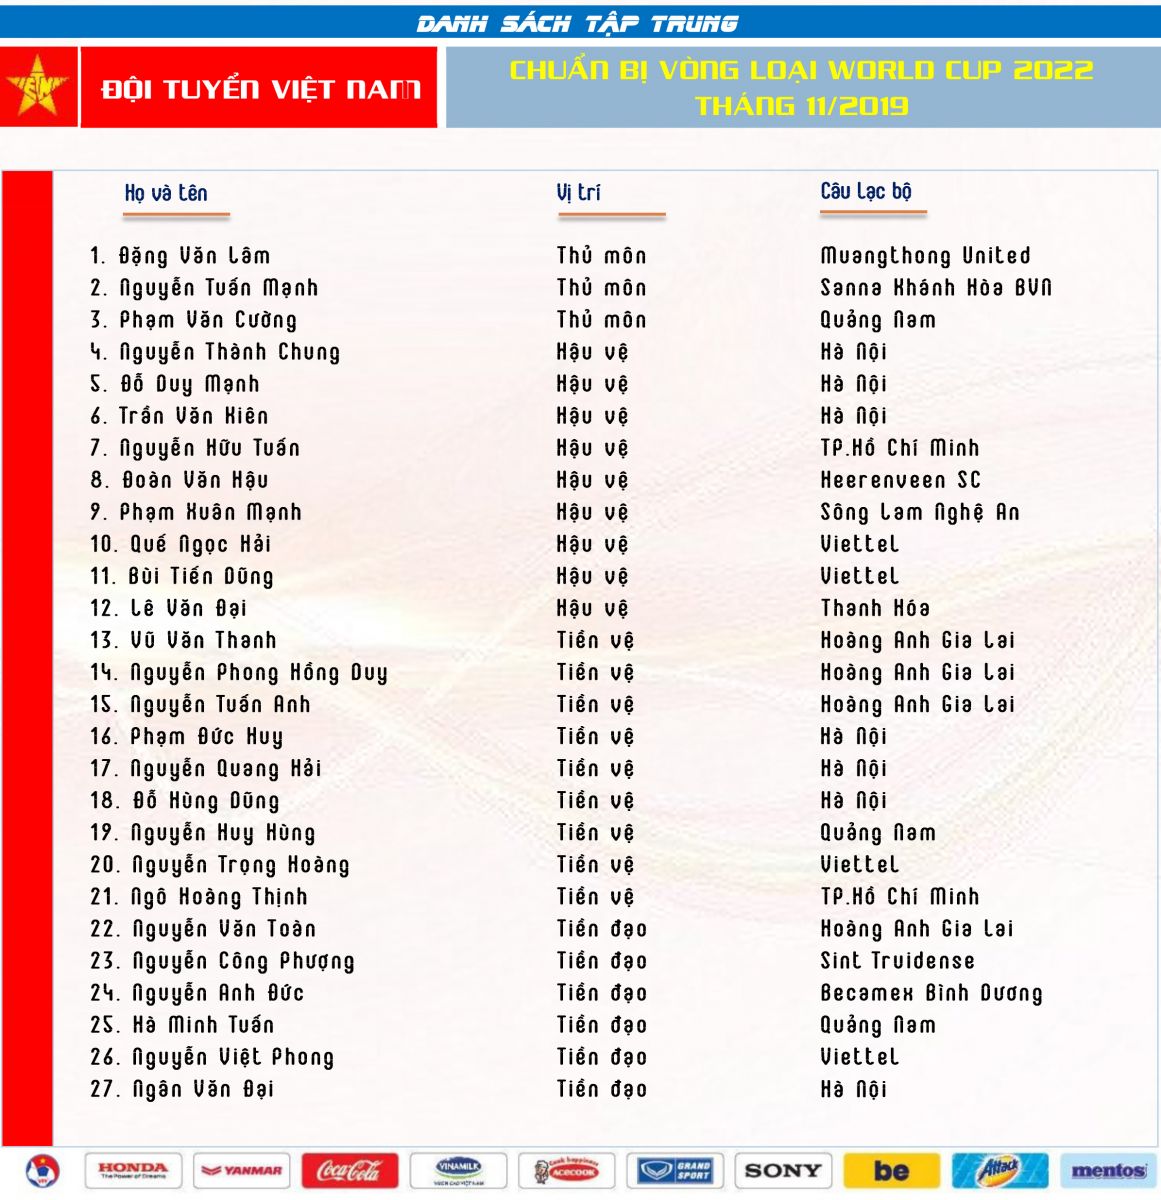 Vietnam’s squad list against Thailand and UAE